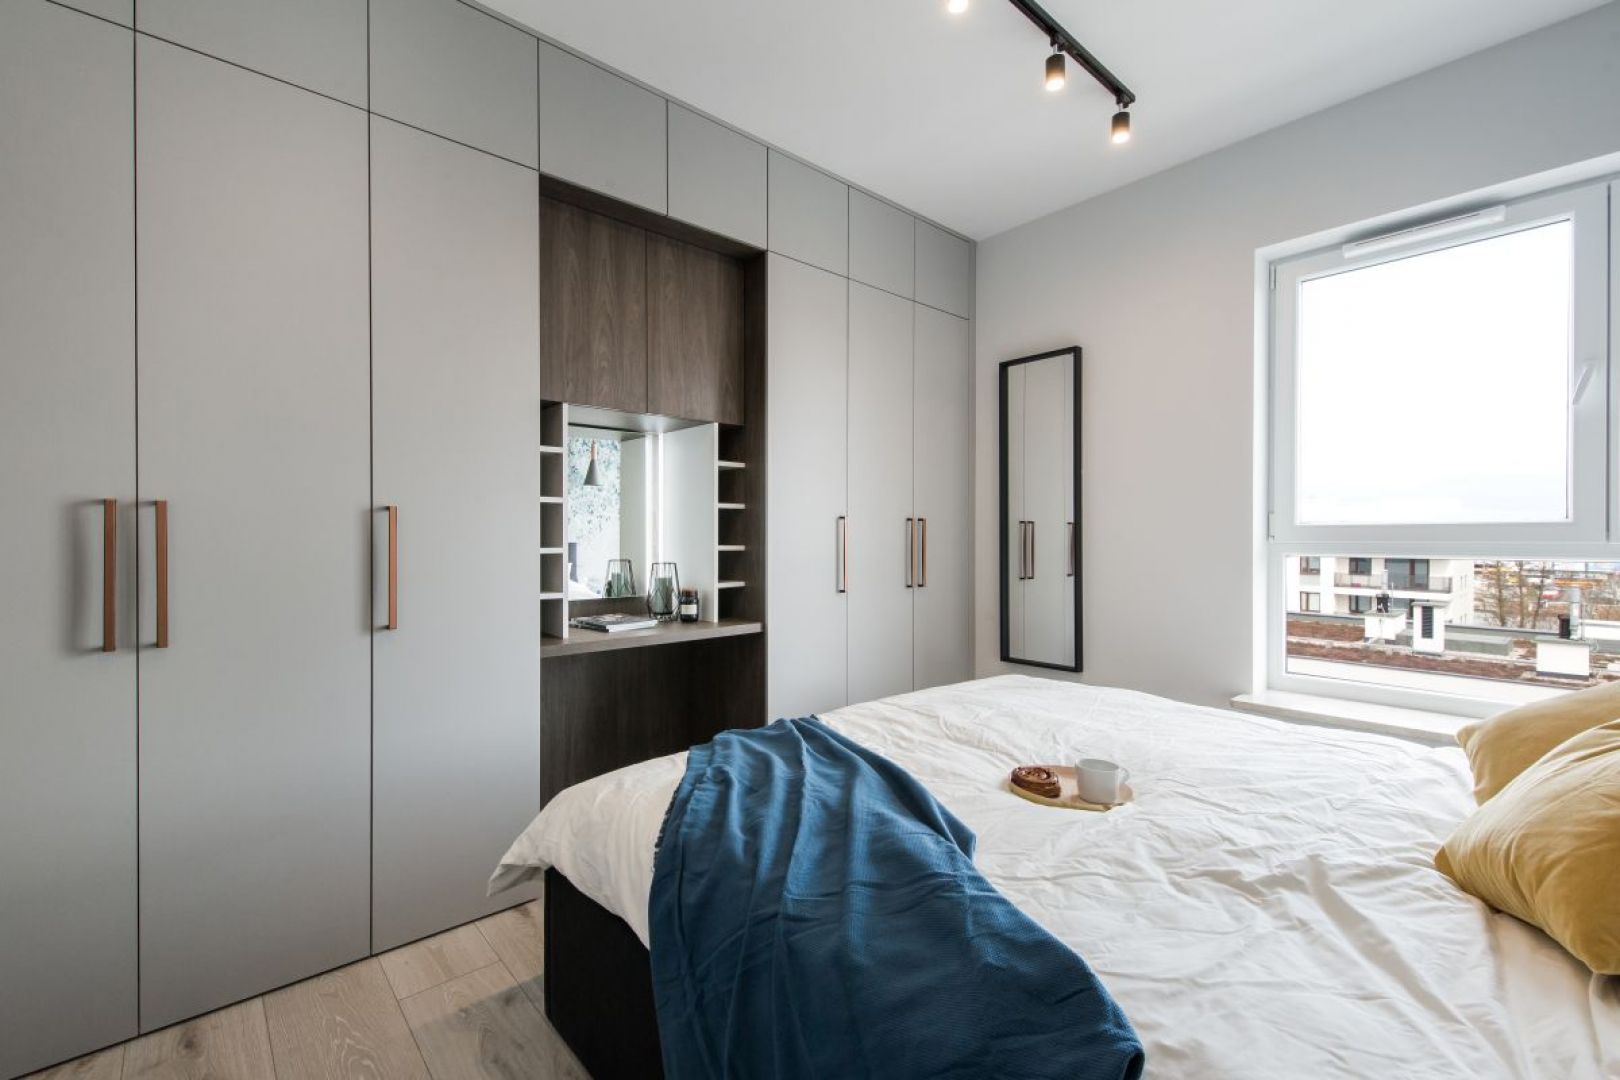 Przestrzeń sypialni została zorganizowana w formie dwóch jasno wydzielonych stref – snu oraz przechowywania. Fot. Kodo